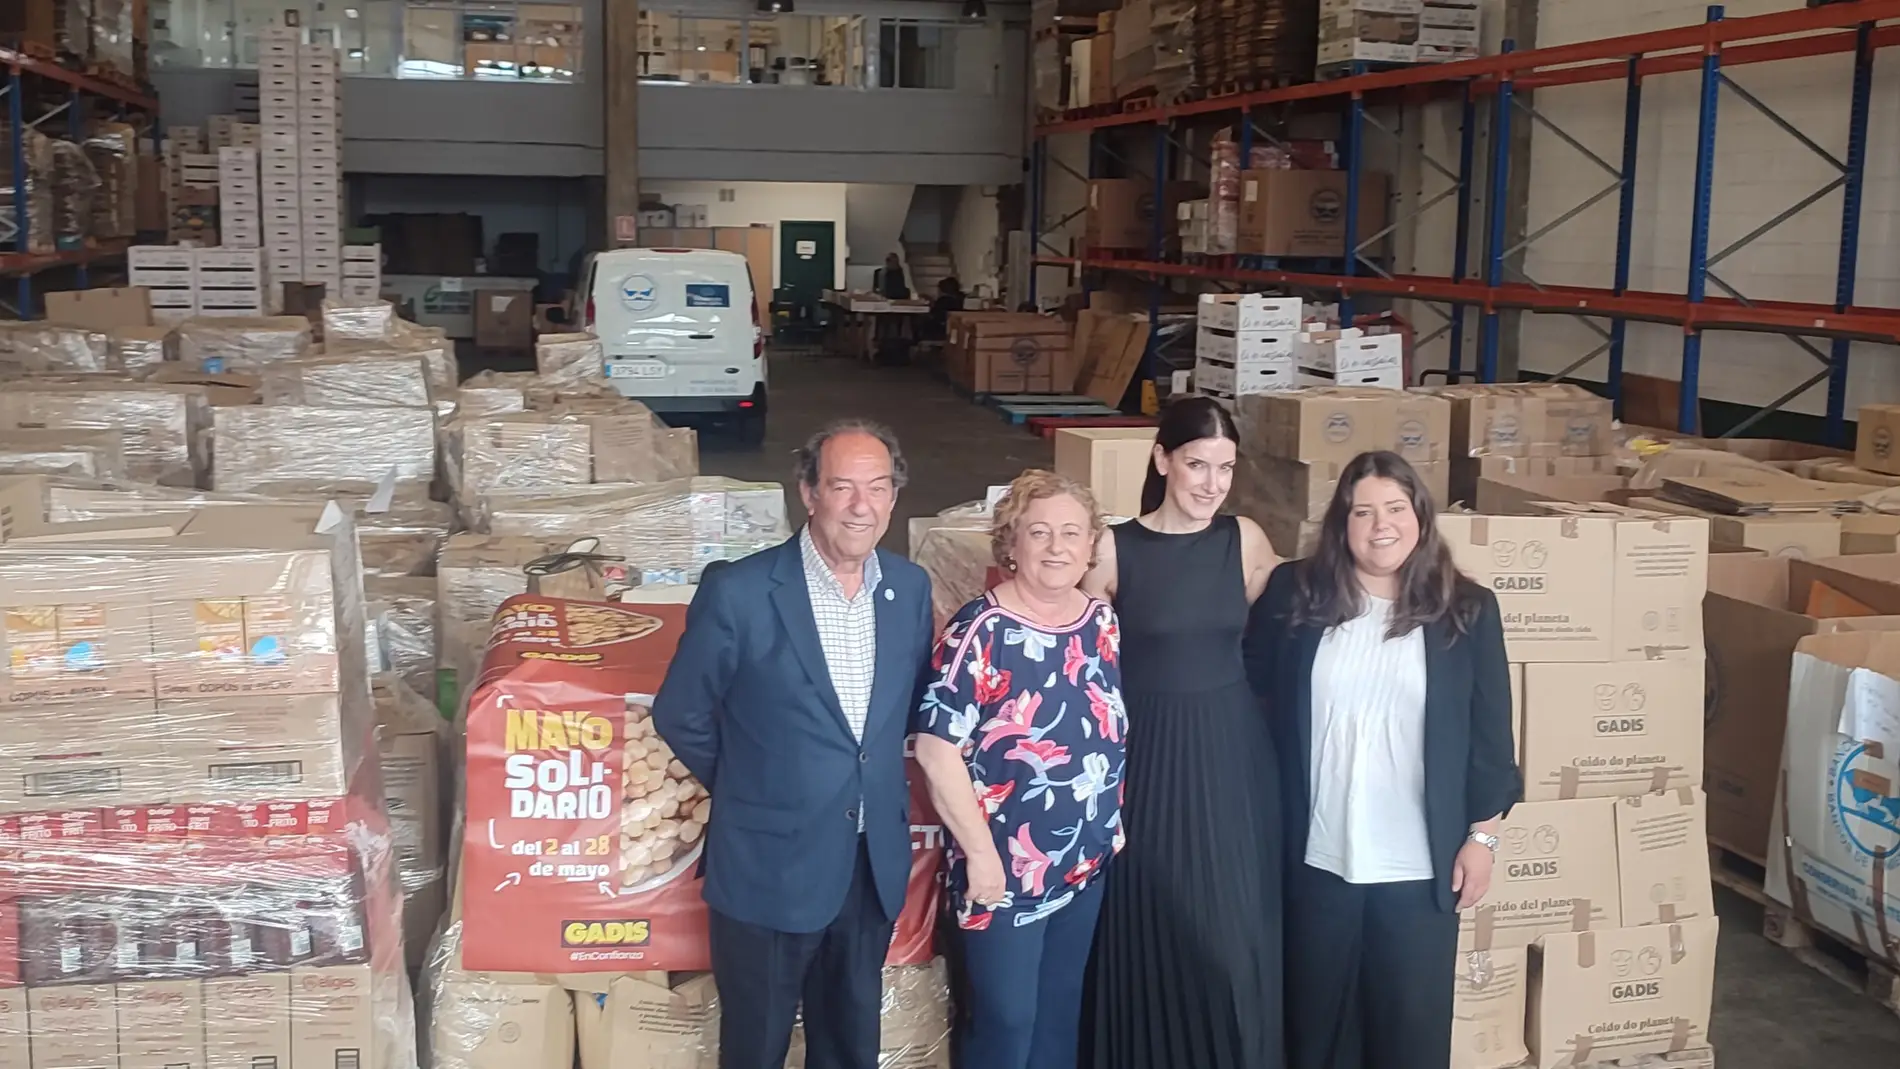 Gadis entrega máis de 150.000 quilos de productos grazas o Maio solidario